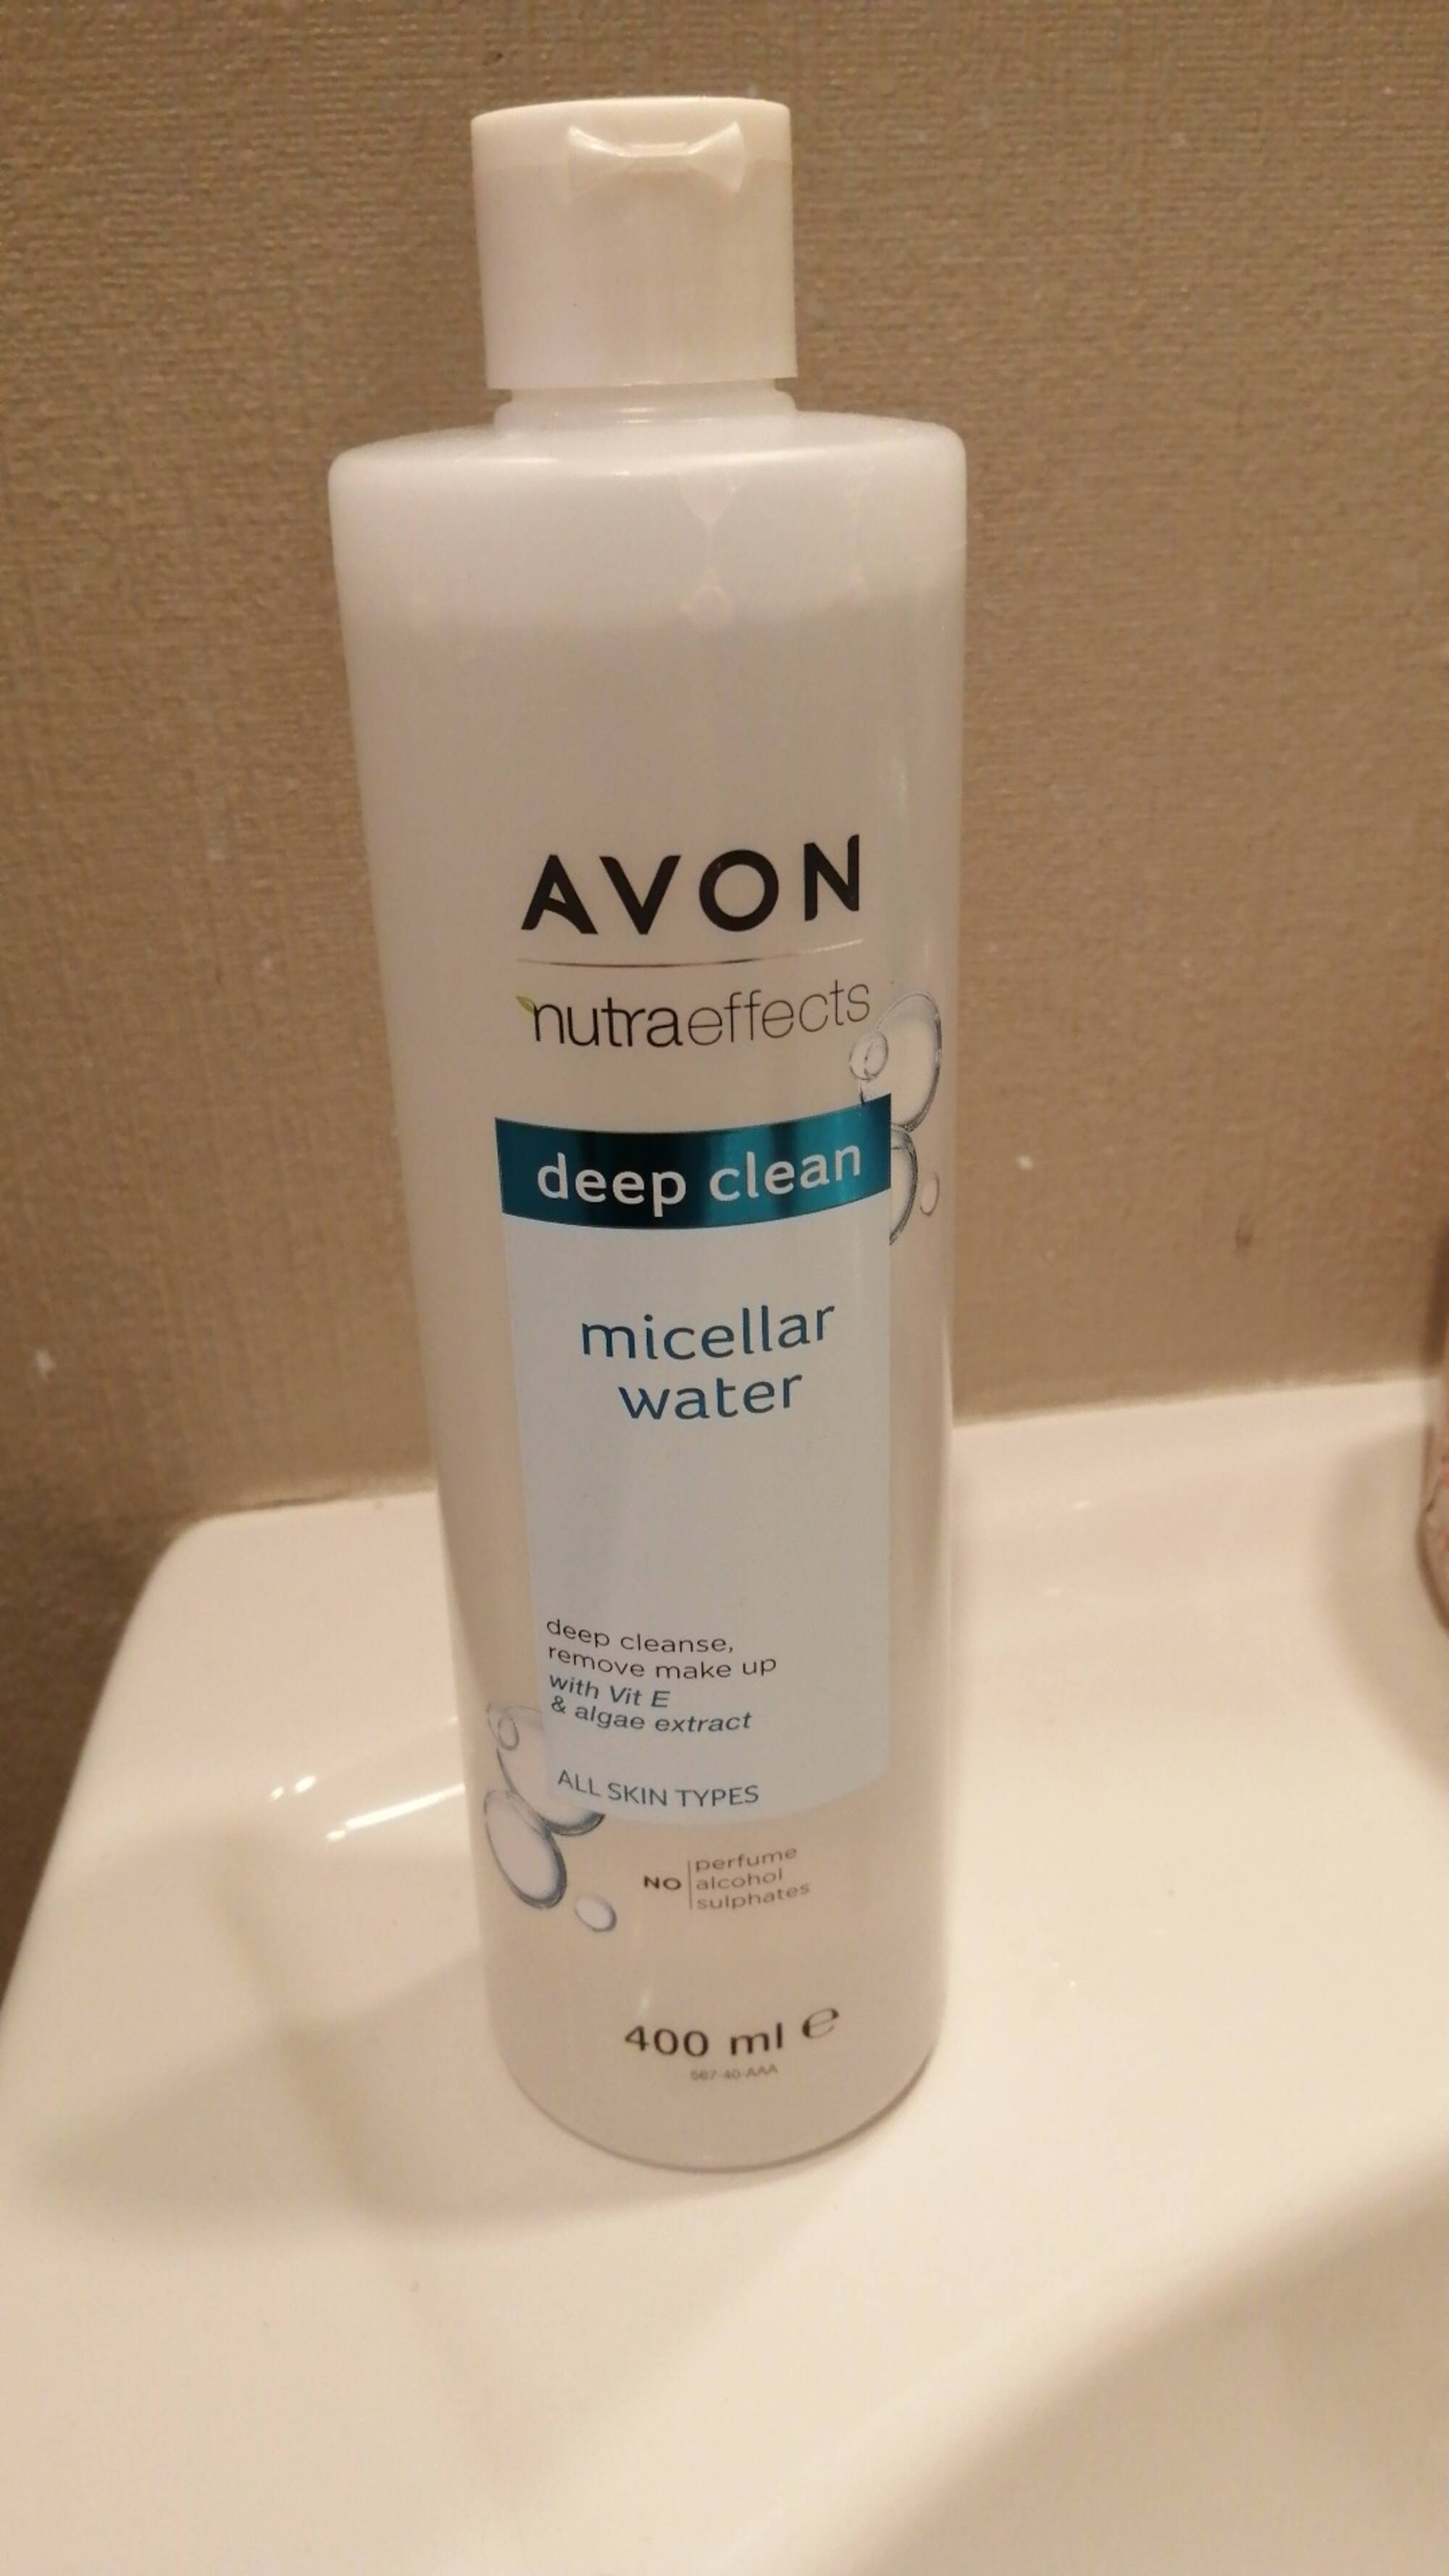 AVON - Deep clean - Micellar water